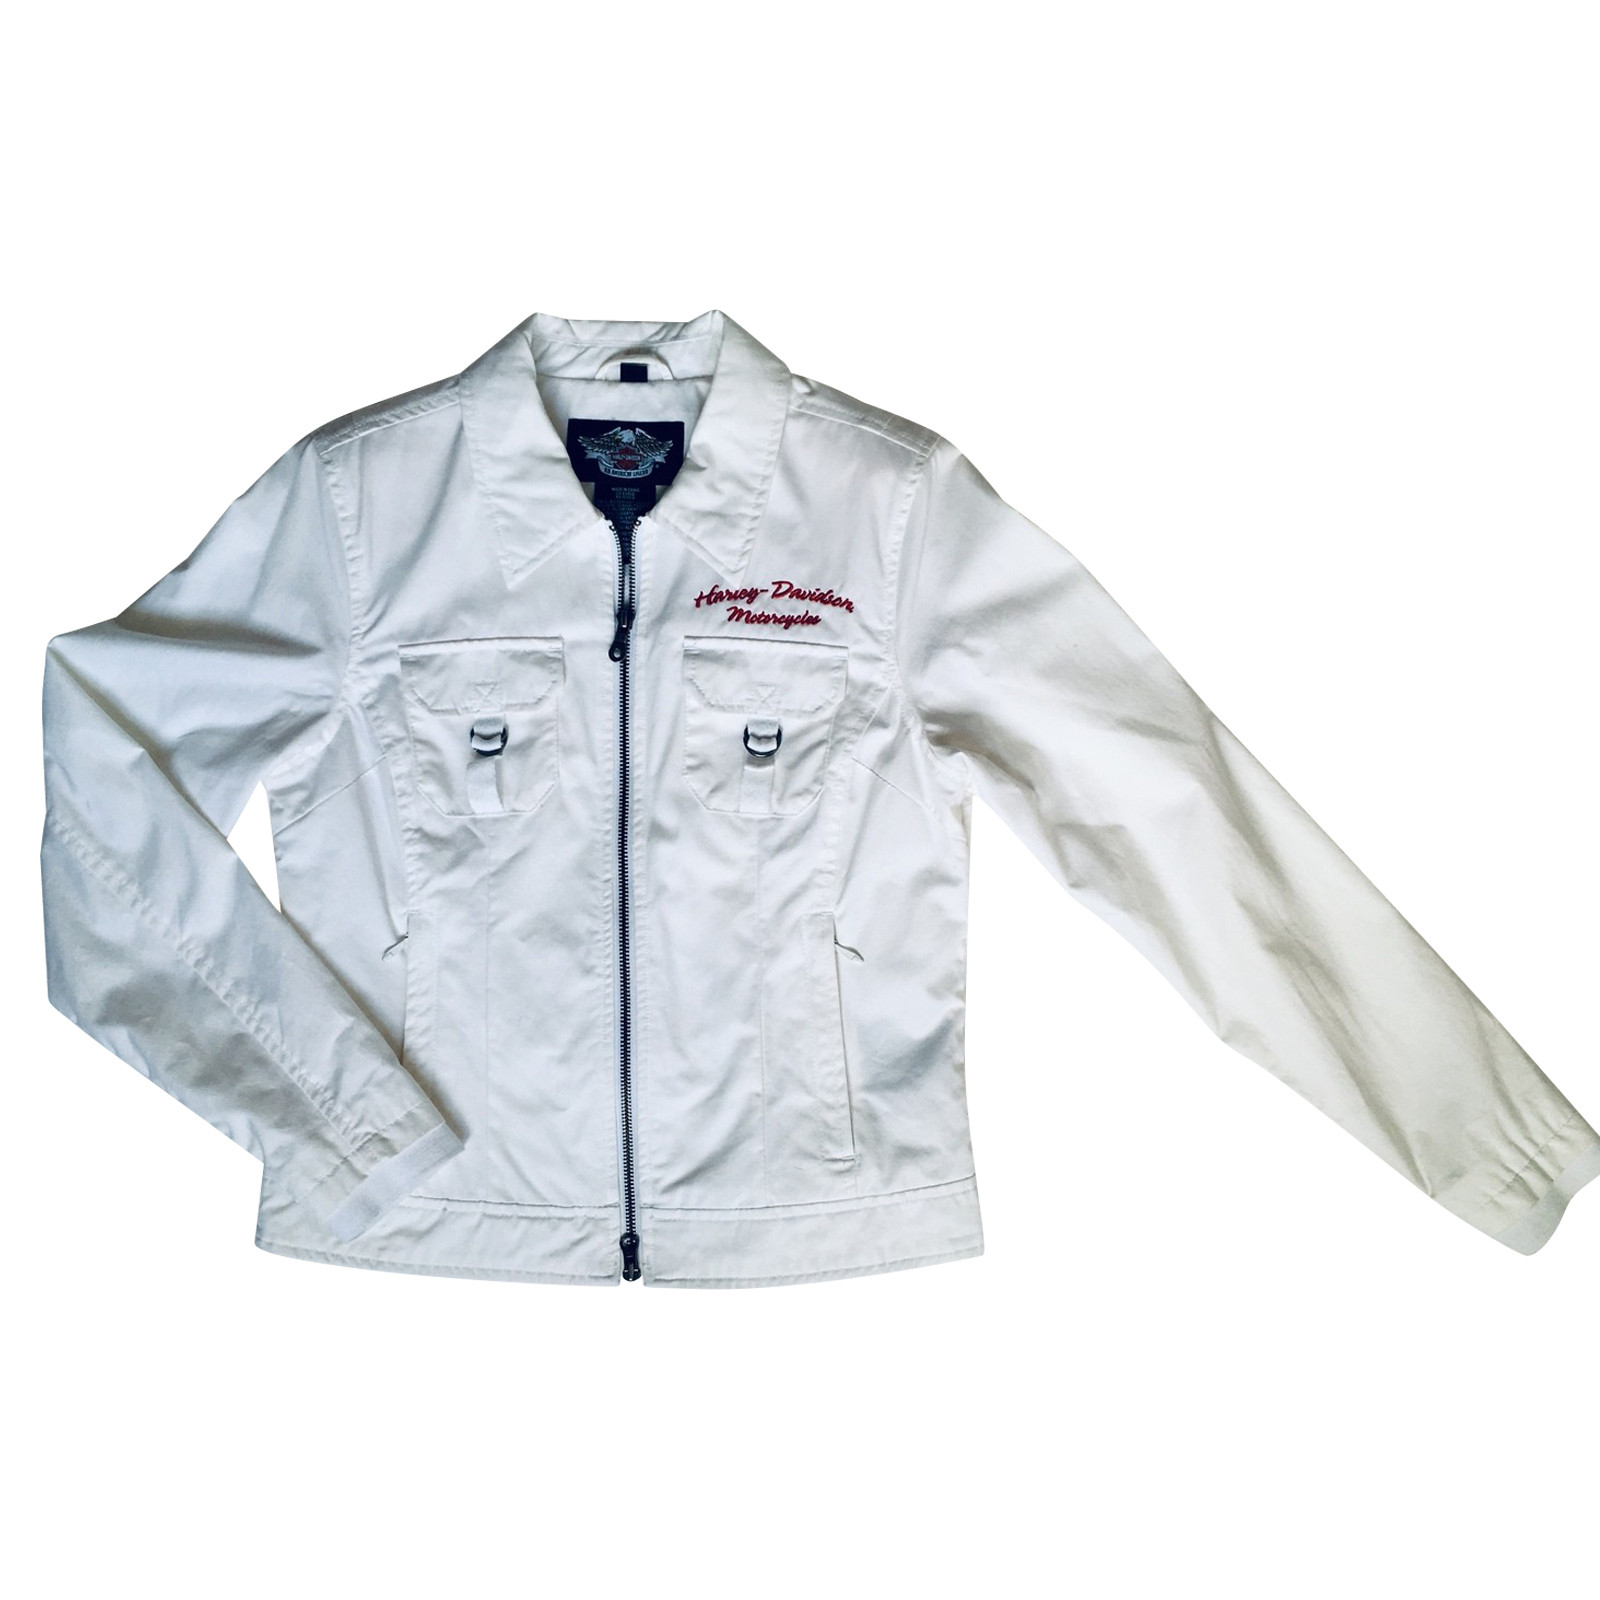 Harley Davidson Jacket/Coat Cotton in White - Second Hand Harley Davidson  Jacket/Coat Cotton in White gebraucht kaufen für 69€ (4131628)